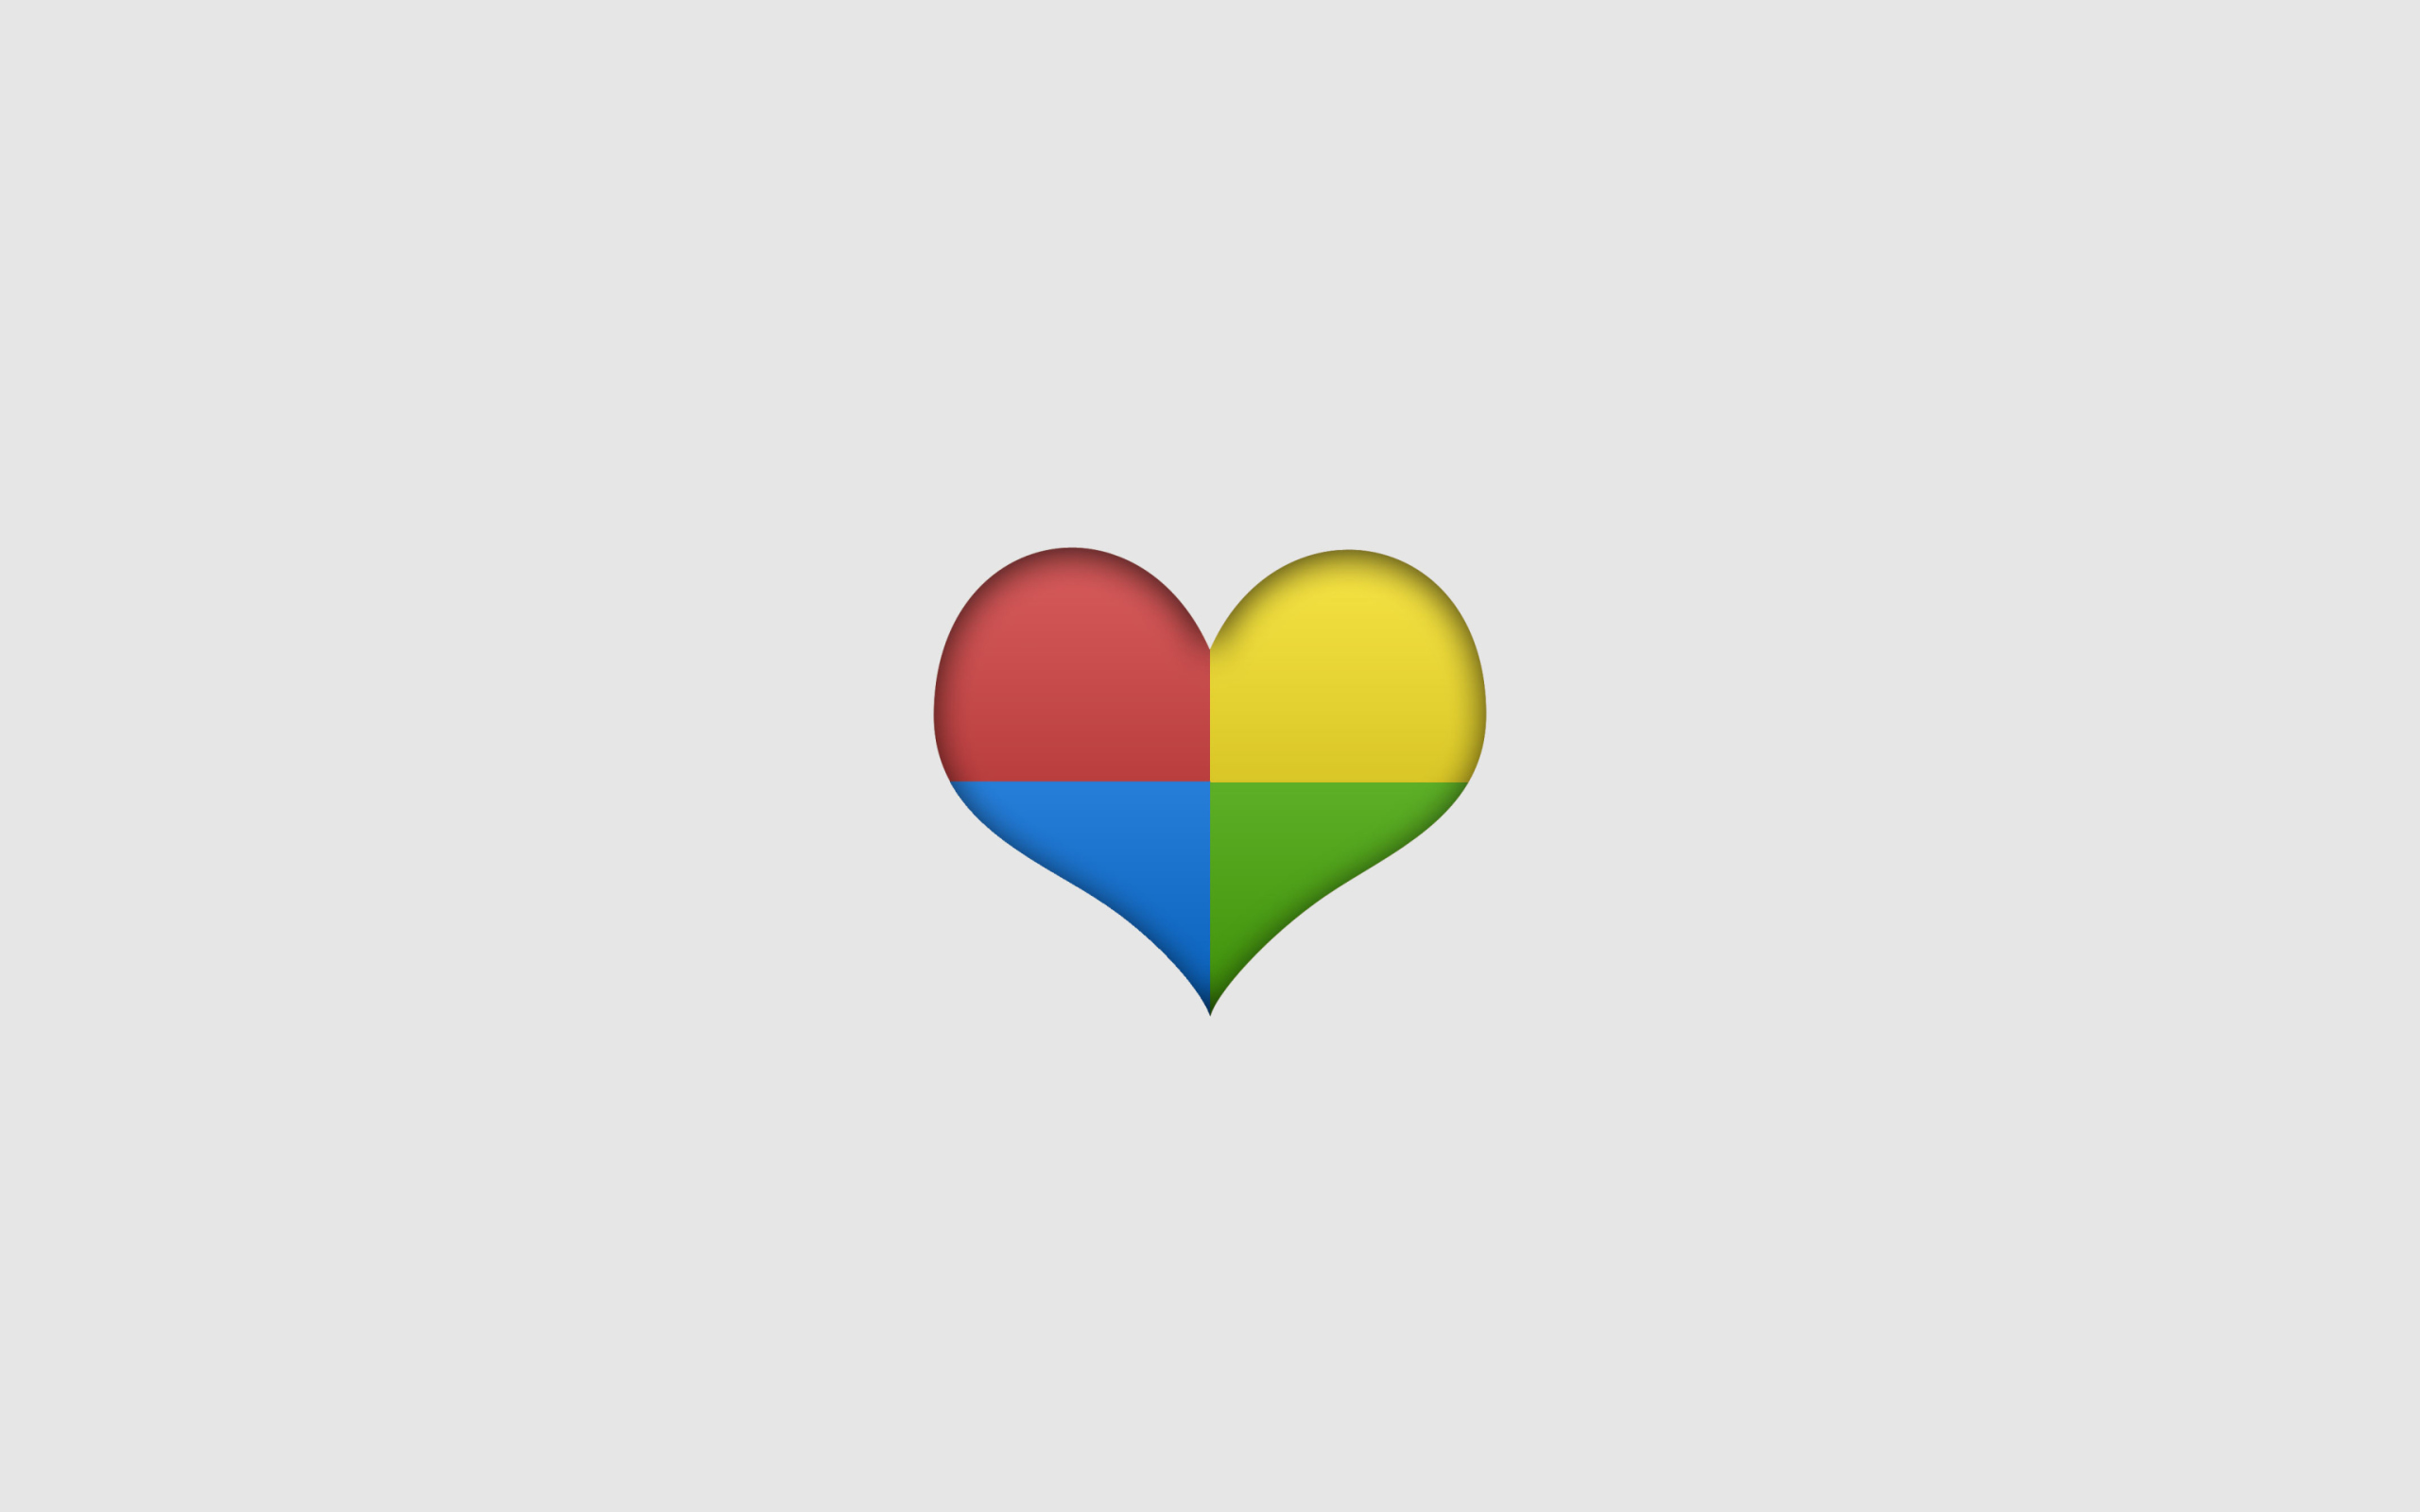 Das Google Heart Wallpaper 2560x1600